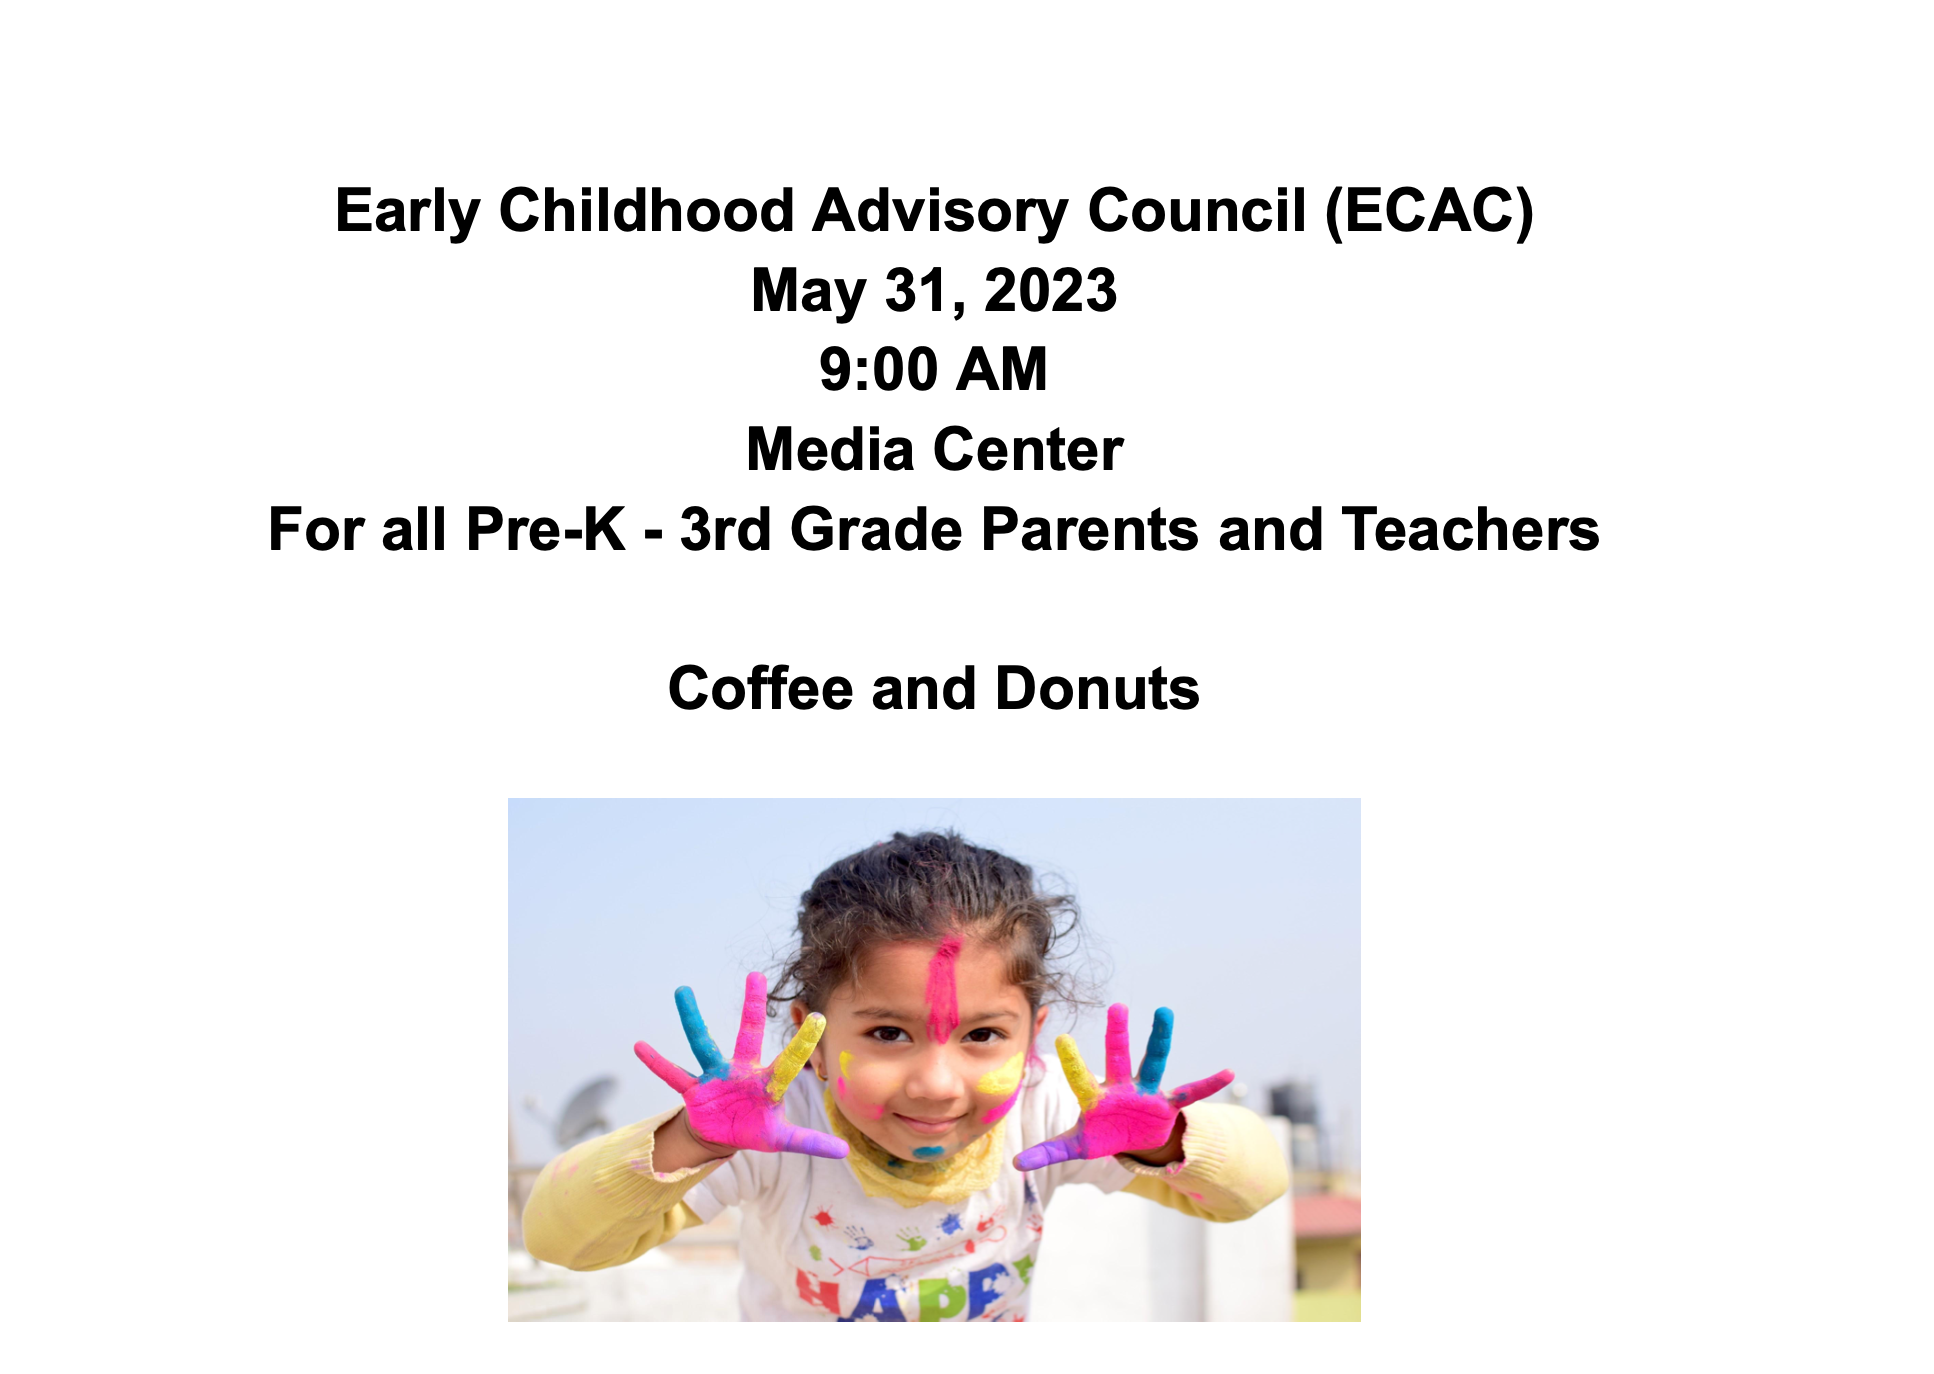 ECAC May 31 Meeting